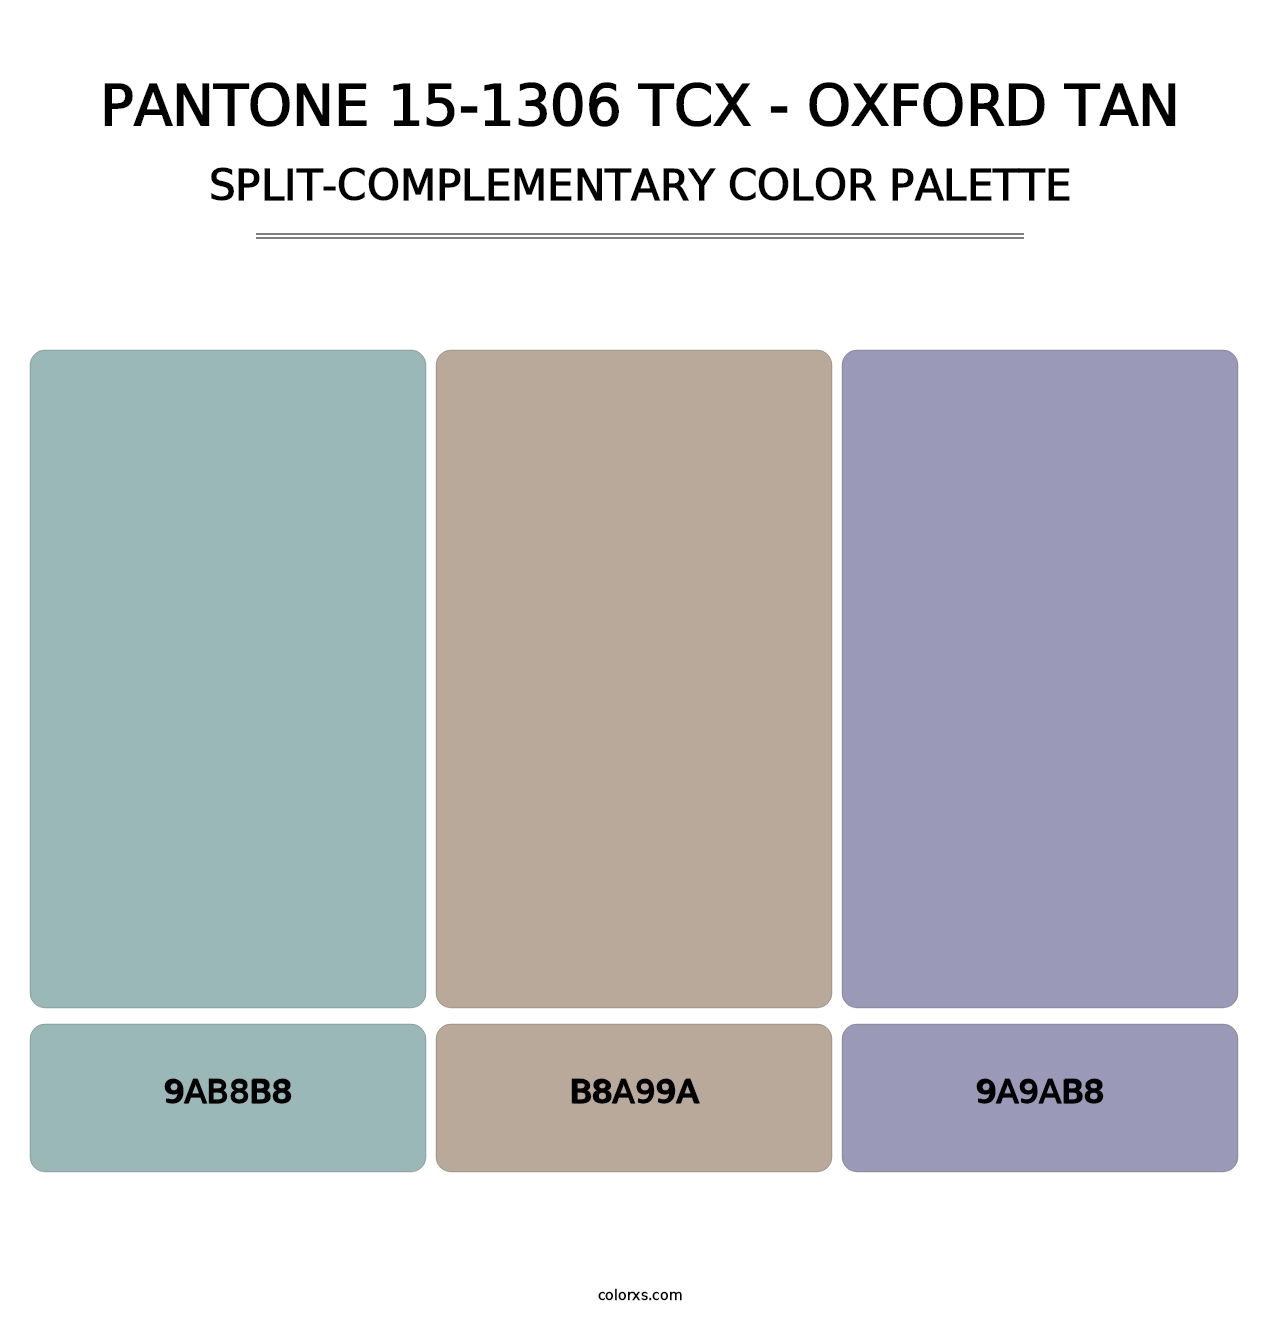 PANTONE 15-1306 TCX - Oxford Tan - Split-Complementary Color Palette